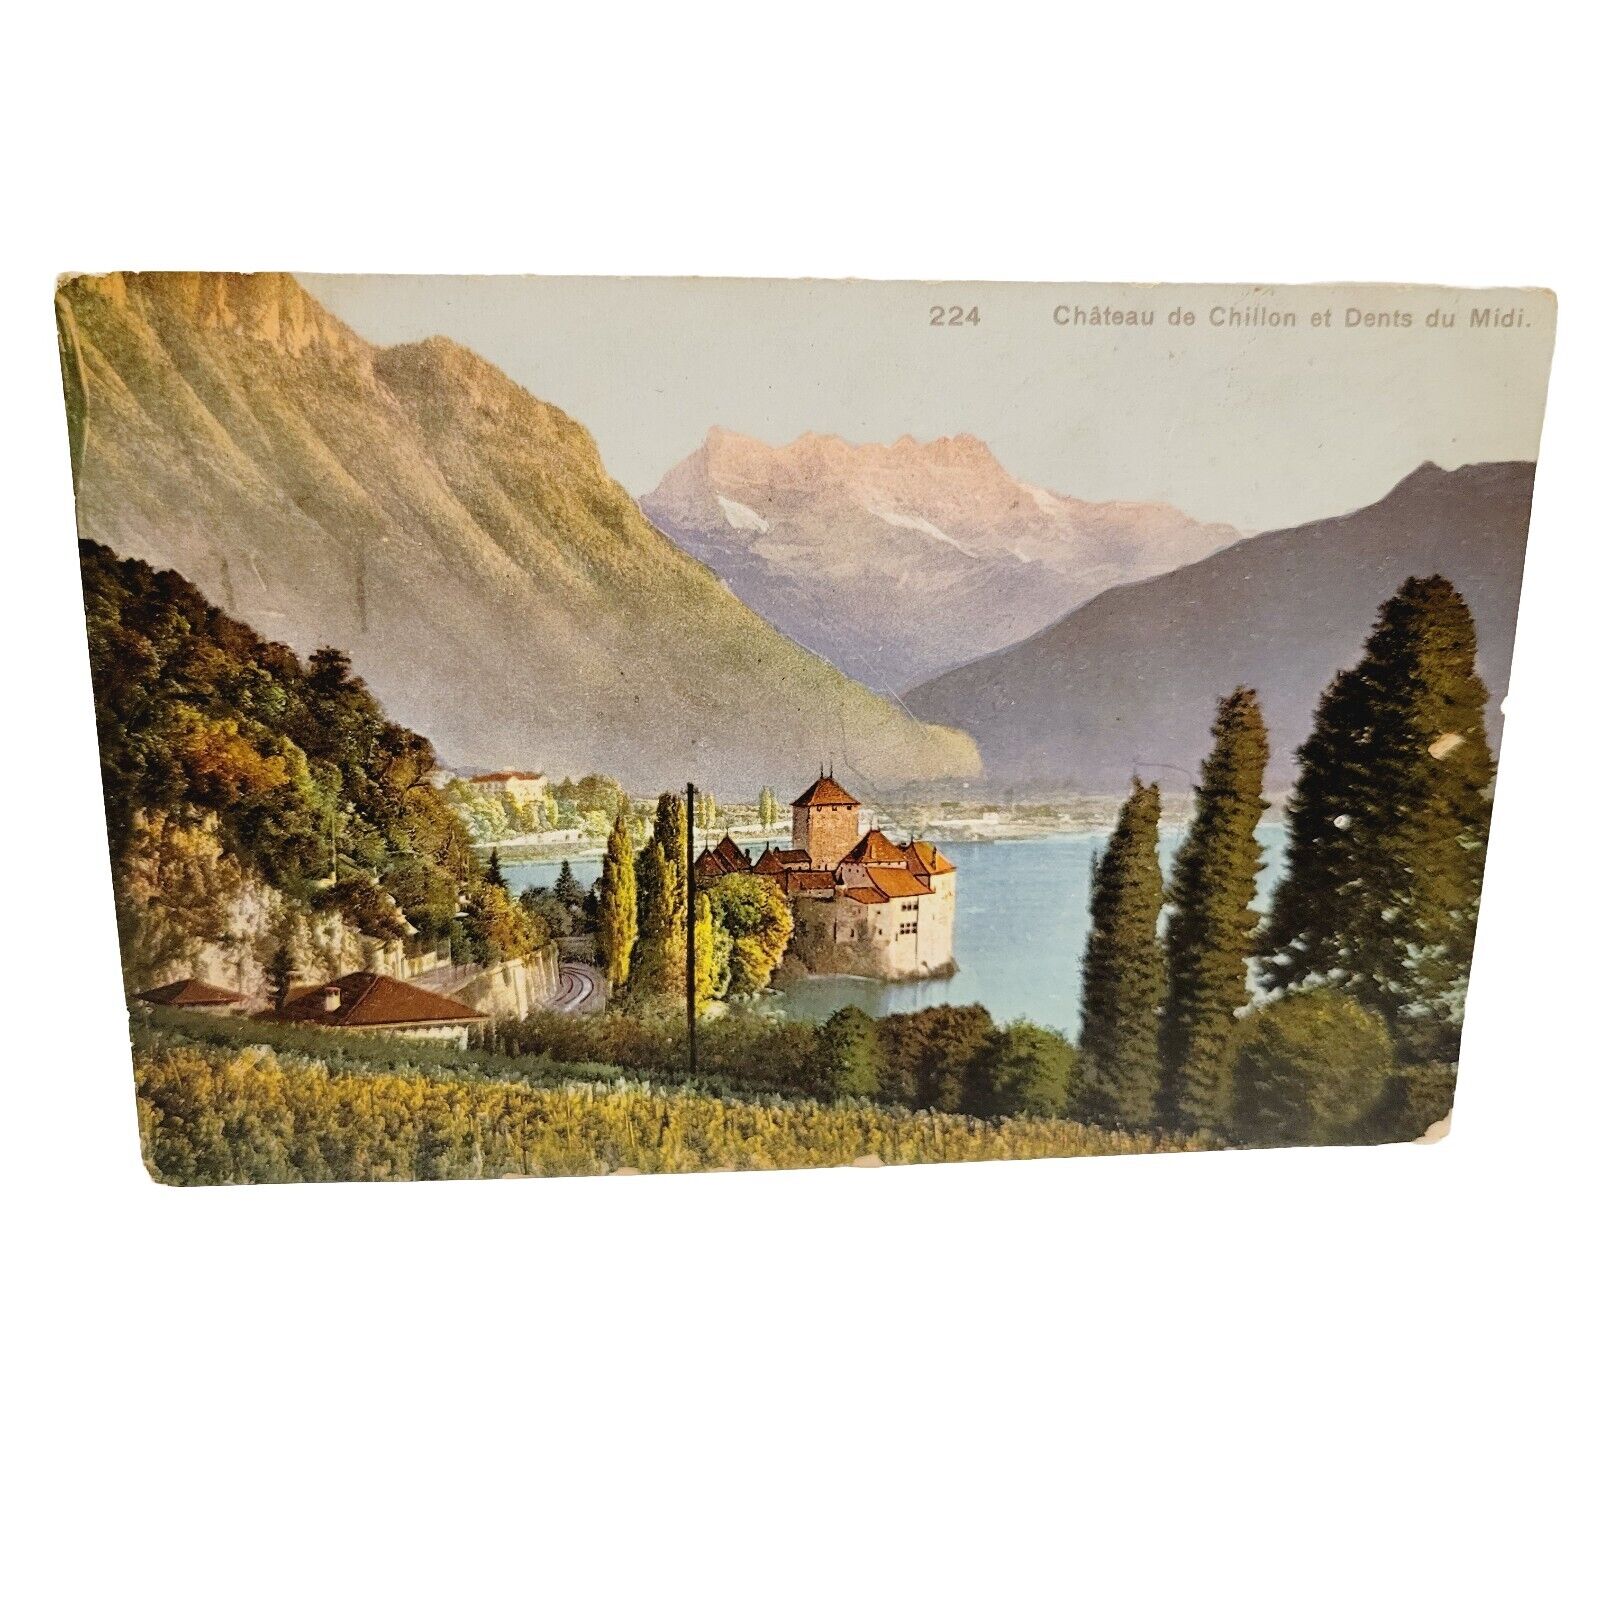 Vtg Switzerland Chateau de Chillon et Dents Du Midi Postcard Posted